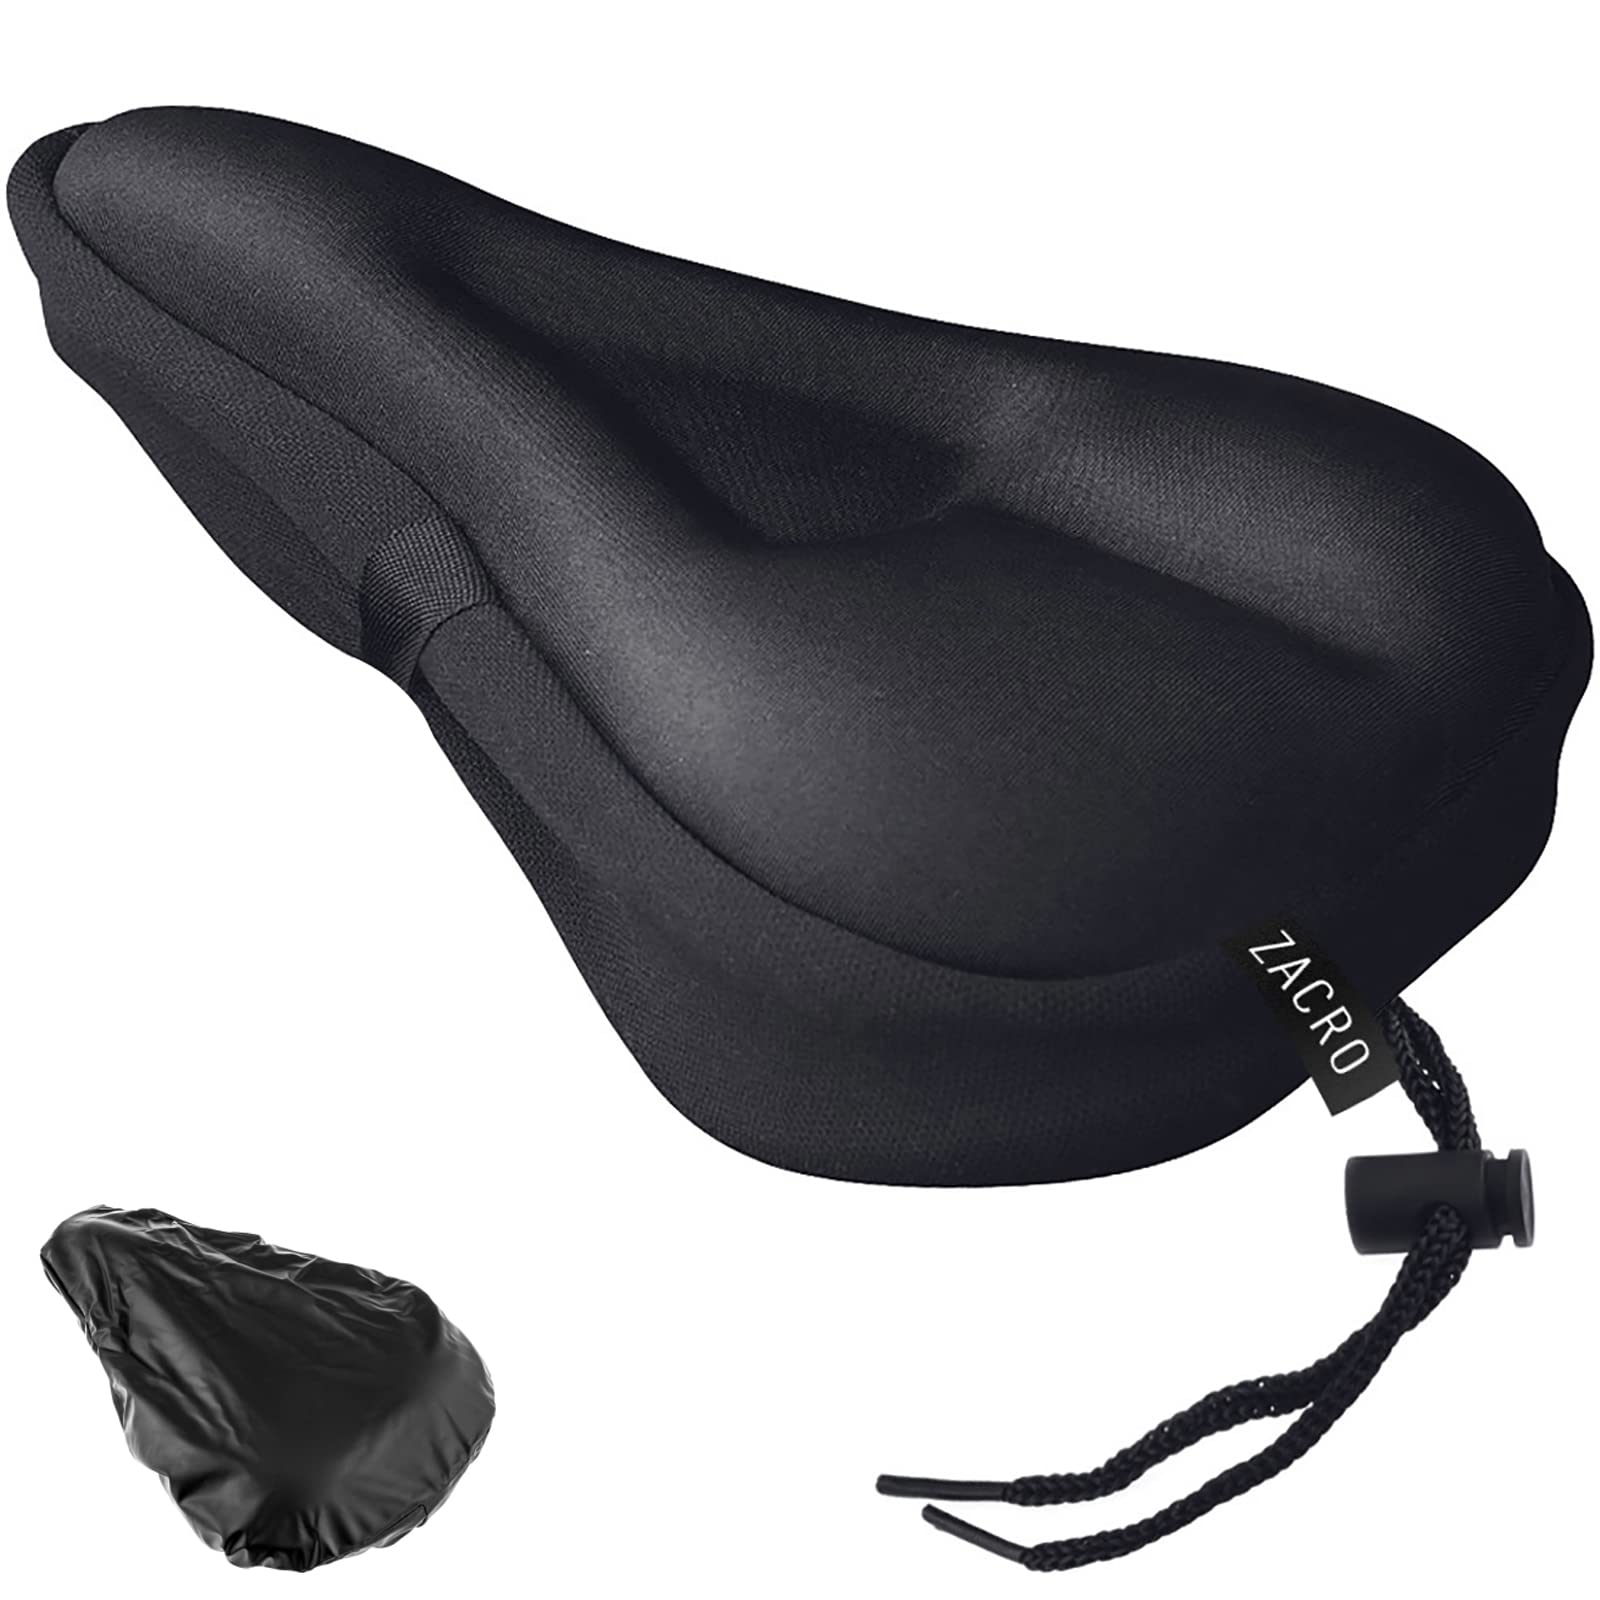 zacro bike seat cushion review